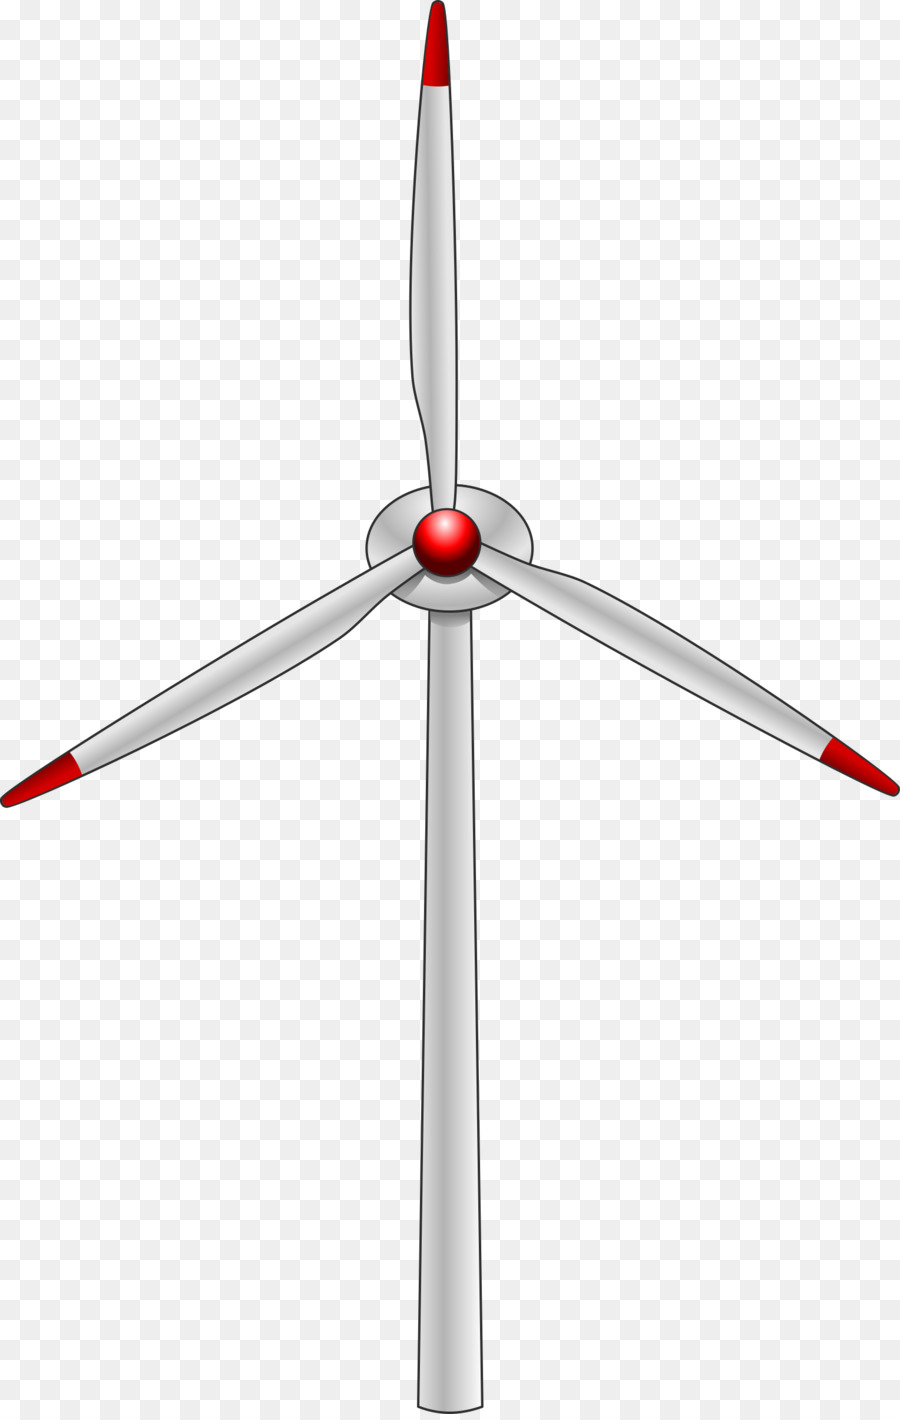 Wind farm Wind turbine clipart - Wind